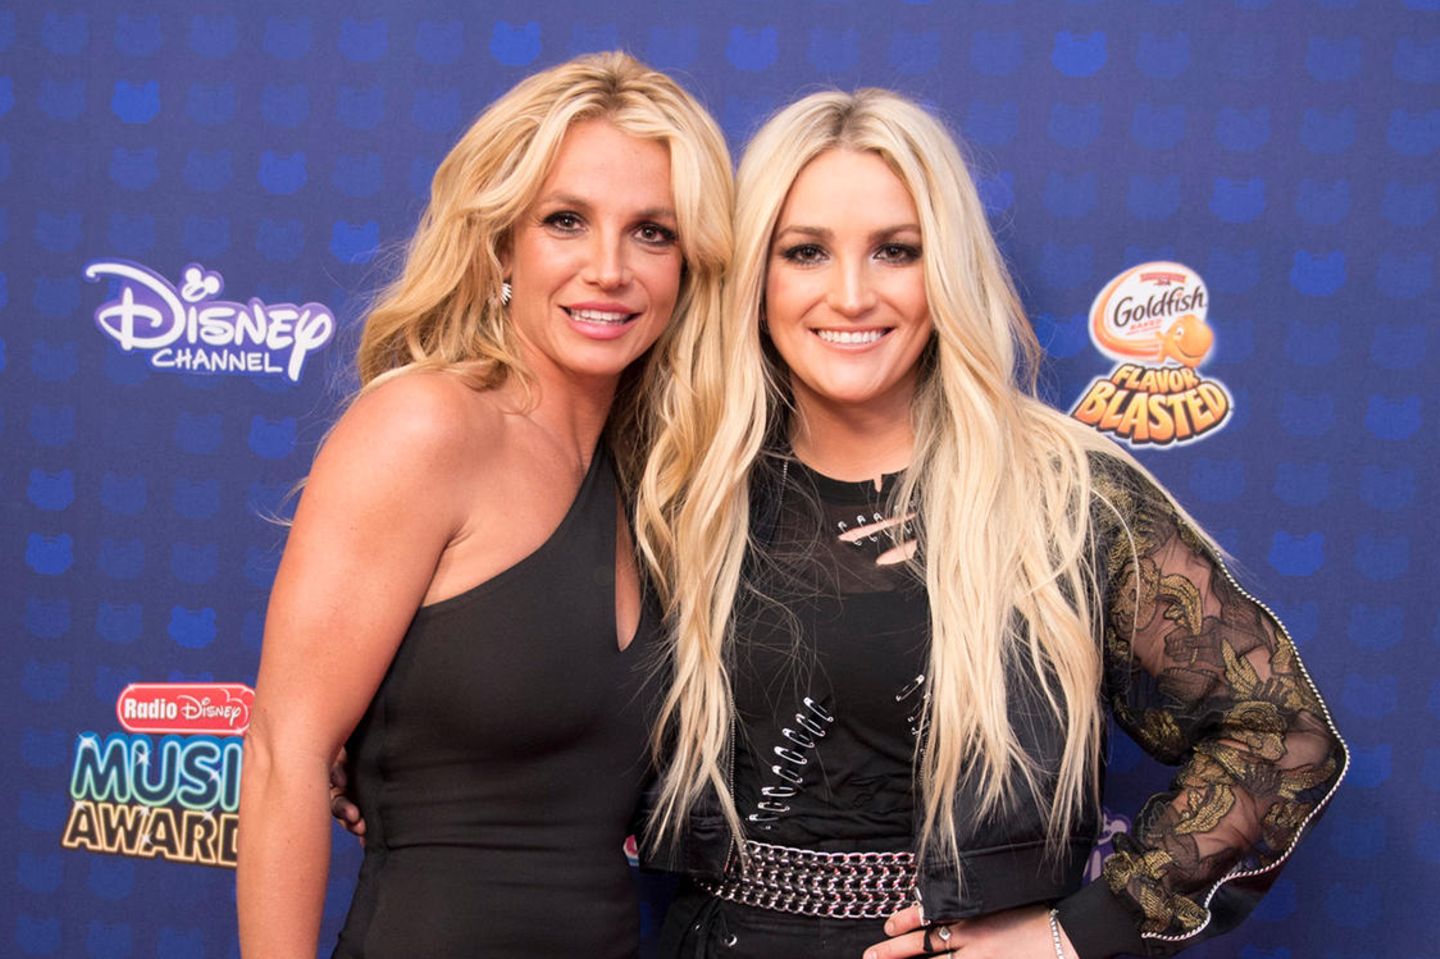 Britney Spears und Jamie Lynn Spears bei einen ihrer wenigen gemeinsamen öffentlichen Auftritte bei den Radio Disney Music Awards 2017 in Los Angeles.